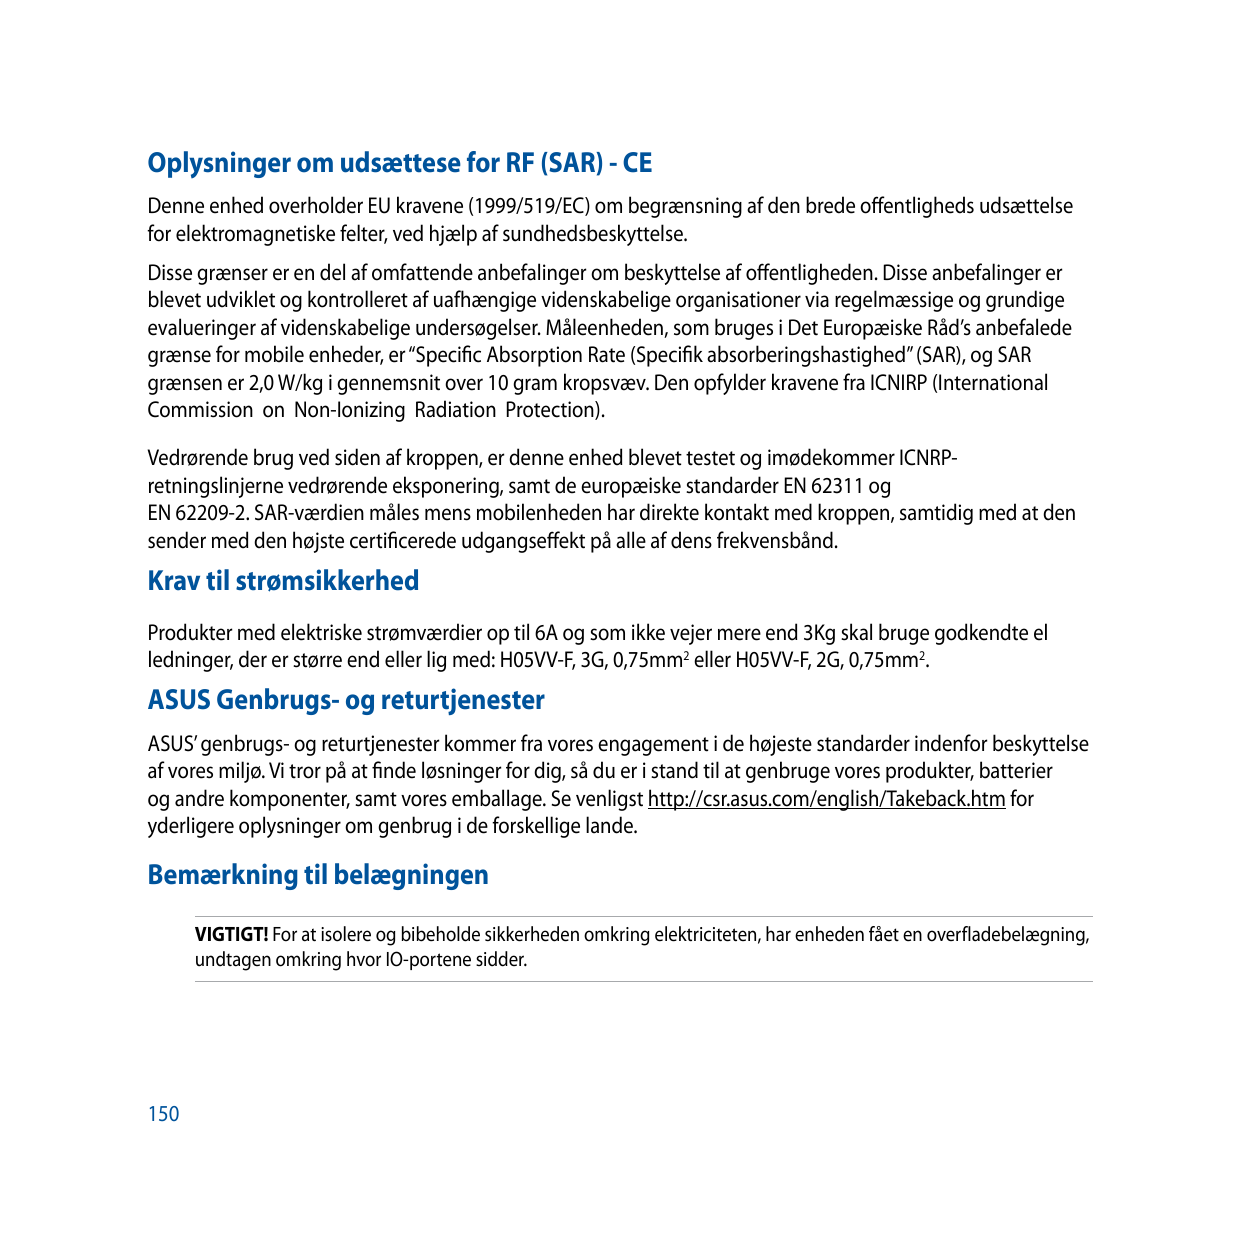 Oplysninger om udsættese for RF (SAR) - CEDenne enhed overholder EU kravene (1999/519/EC) om begrænsning af den brede offentligh